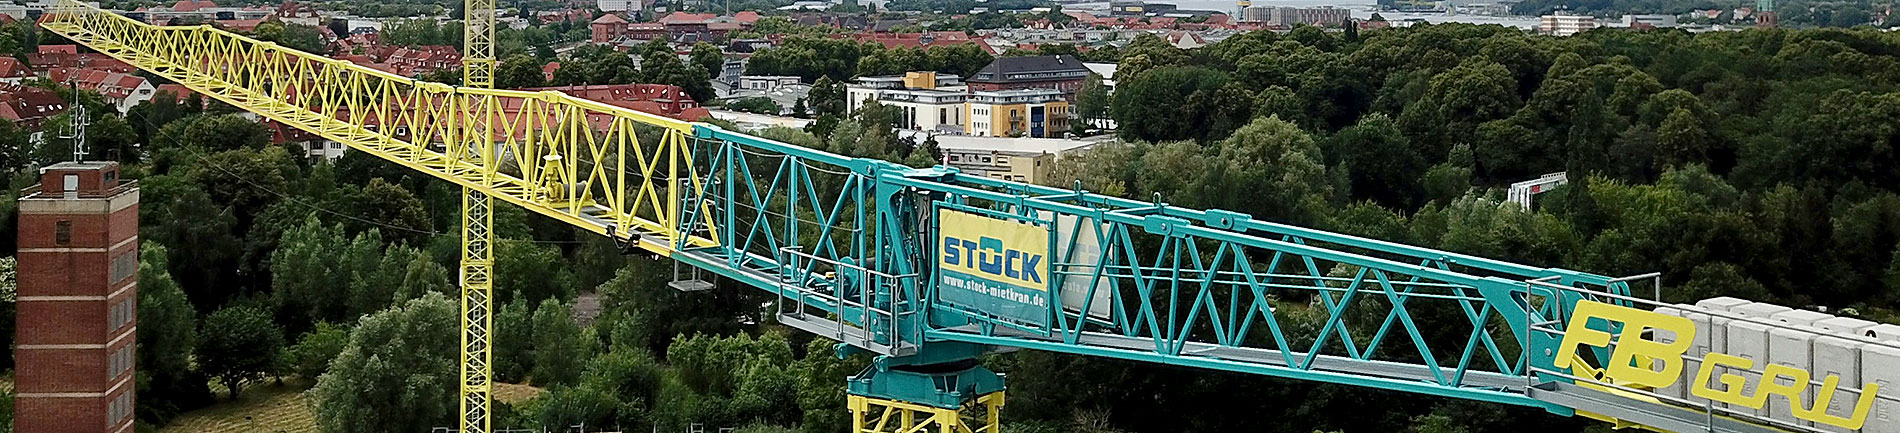 STOCK - B.I.G. GmbH Baumaschinenhandel in Hamburg, Rostock und Berlin. Krane, Schalung und Baugeräte mieten und kaufen